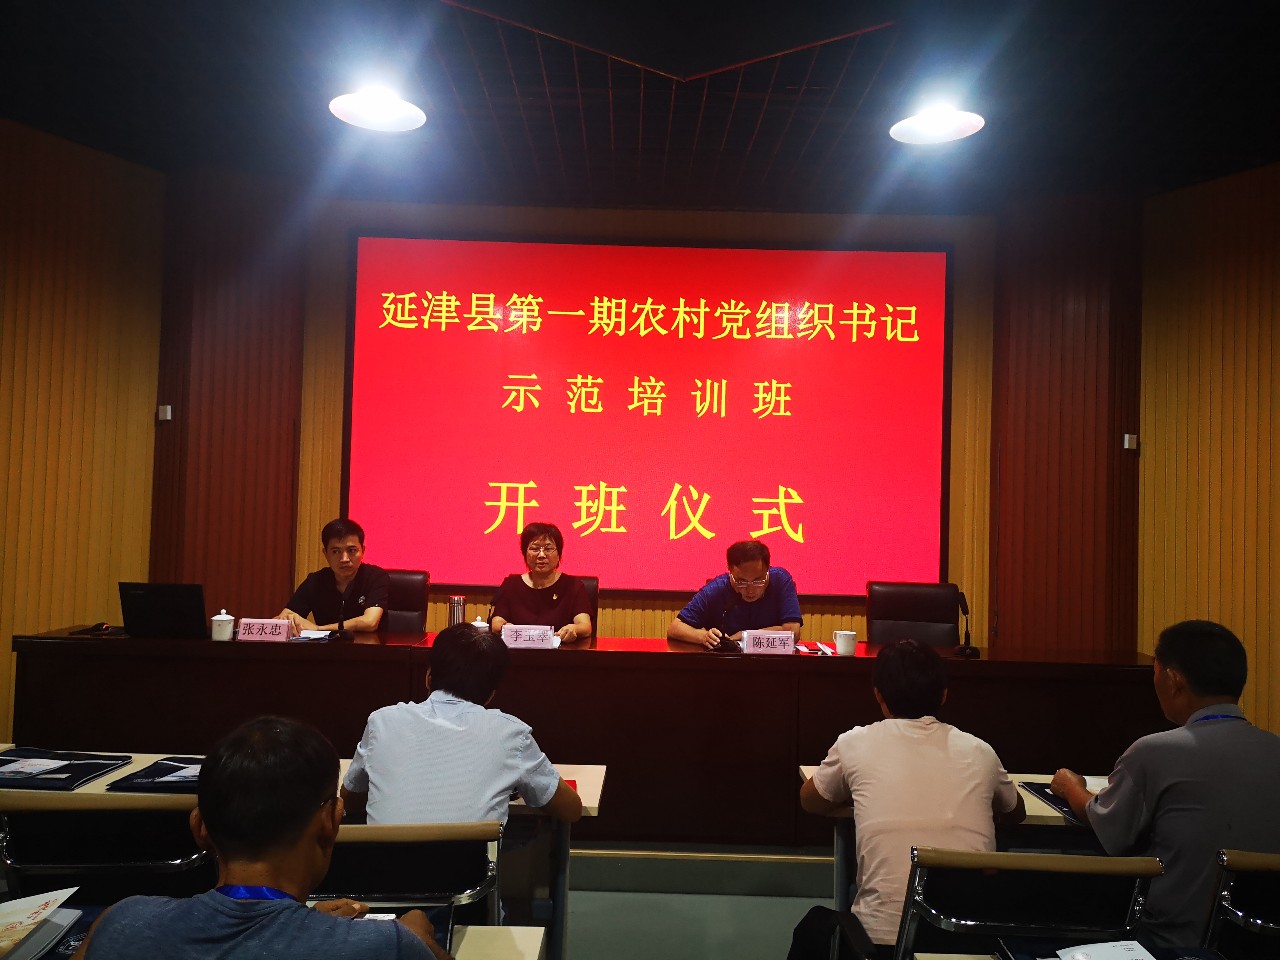 延津县第一期农村党组织书记示范培训班： 学好身边榜样 汲取奋进力量